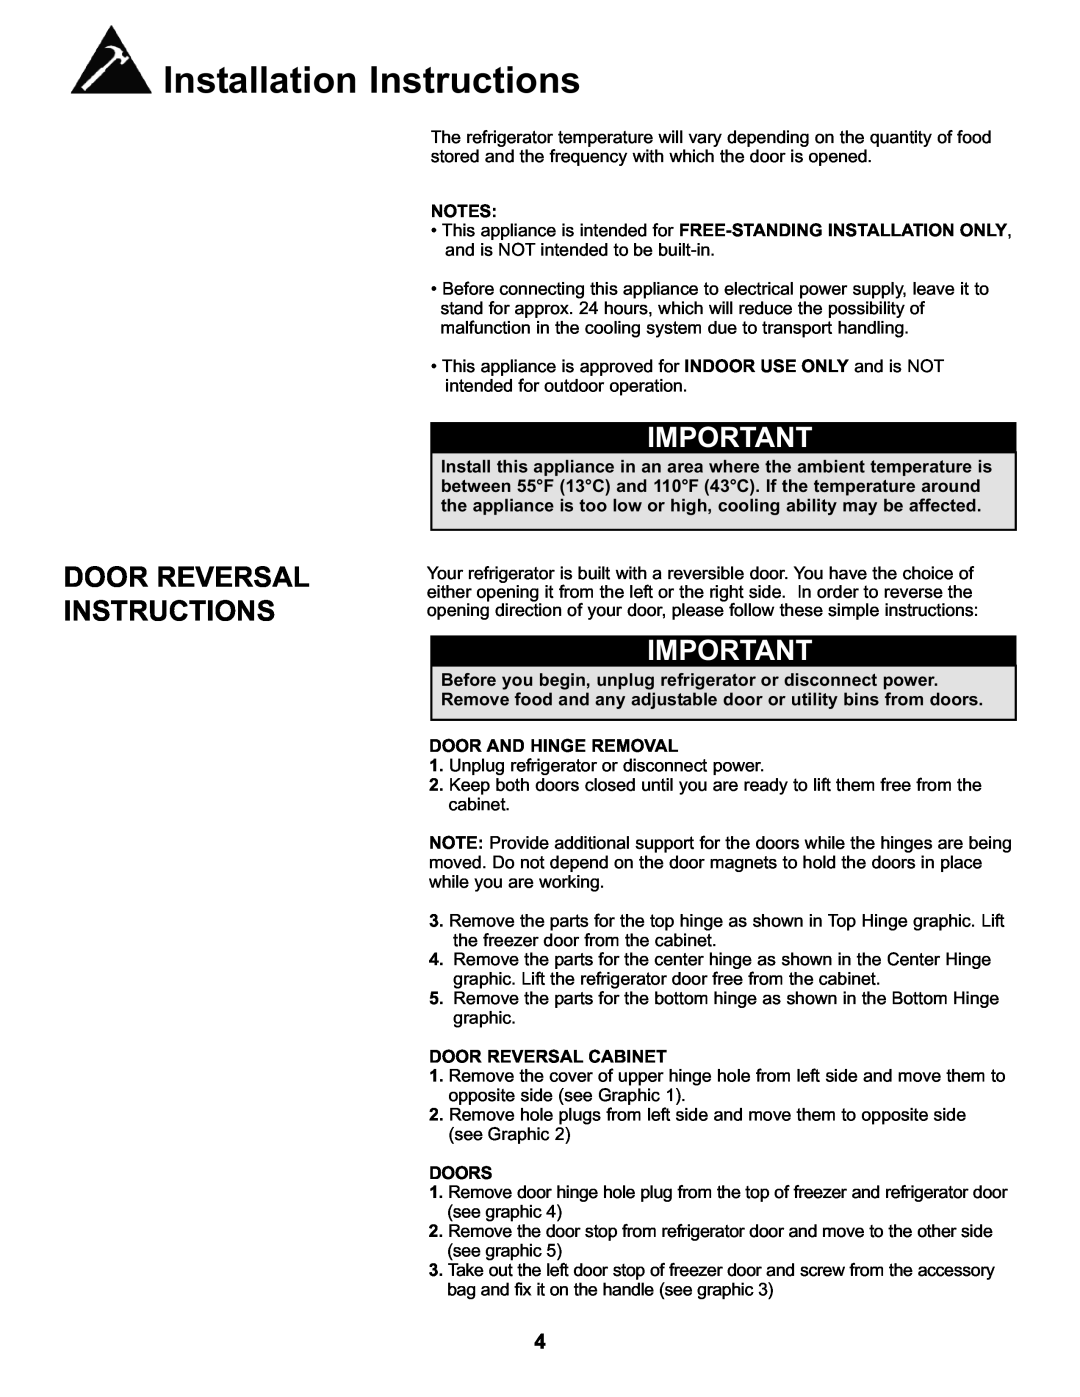 Danby DFF282SLDB manual Door Reversal Instructions, Door And Hinge Removal, Door Reversal Cabinet, Doors 